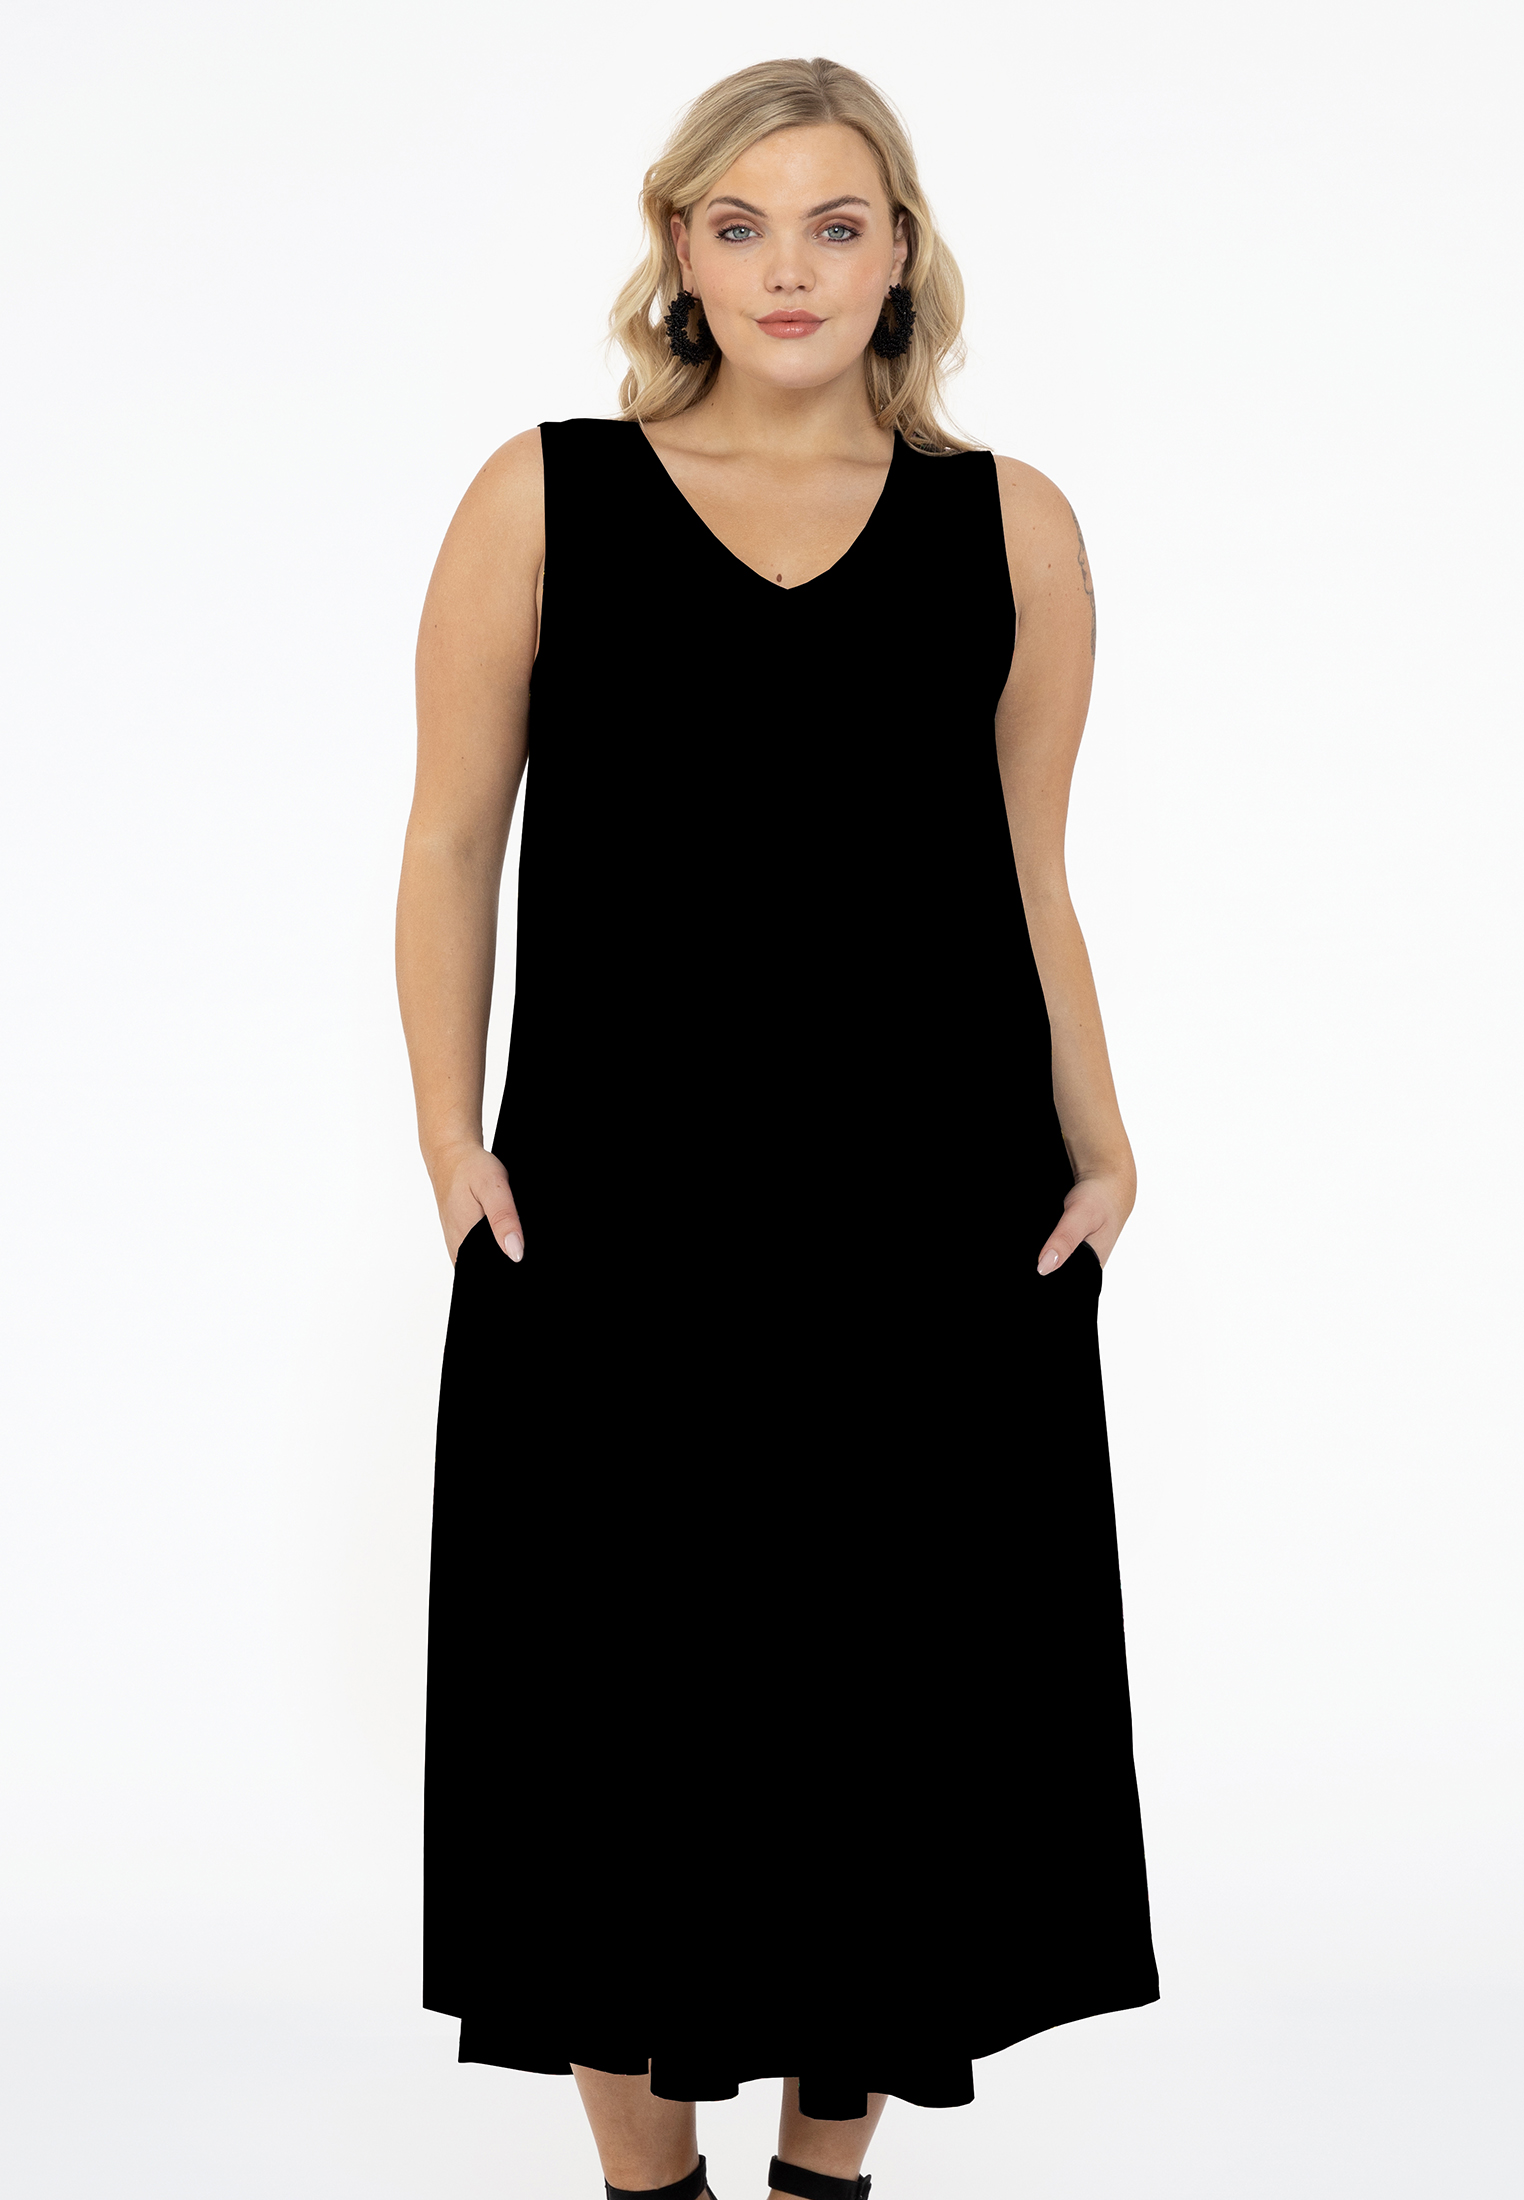 Mouwloze jurk A-lijn DOLCE 54/56 black